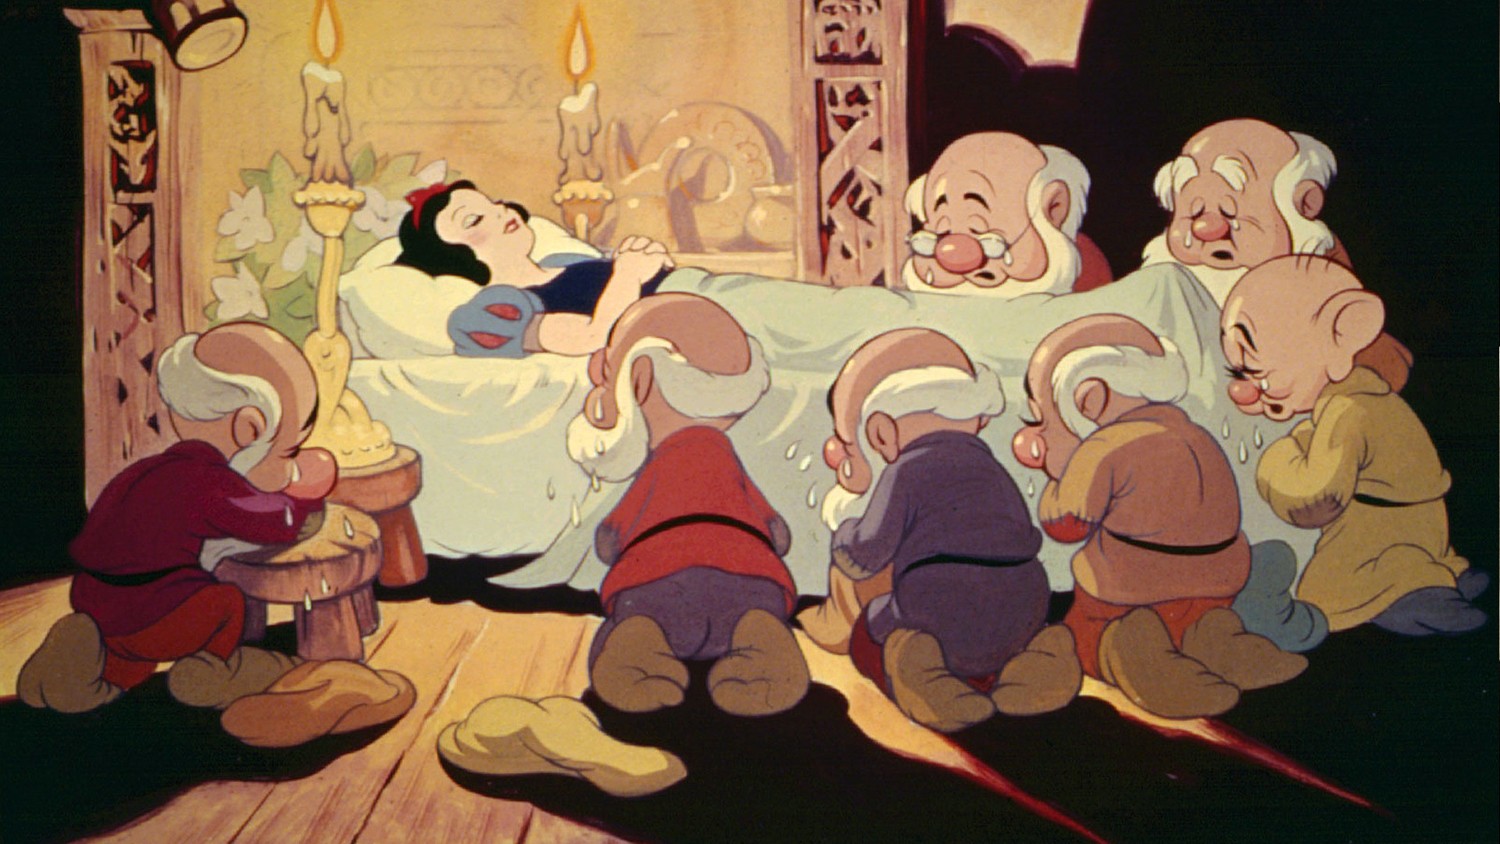 Cena de Branca de Neve e os 7 Anões, filme lançado pelos estúdios Disney em 1937 (Foto: Divulgação )